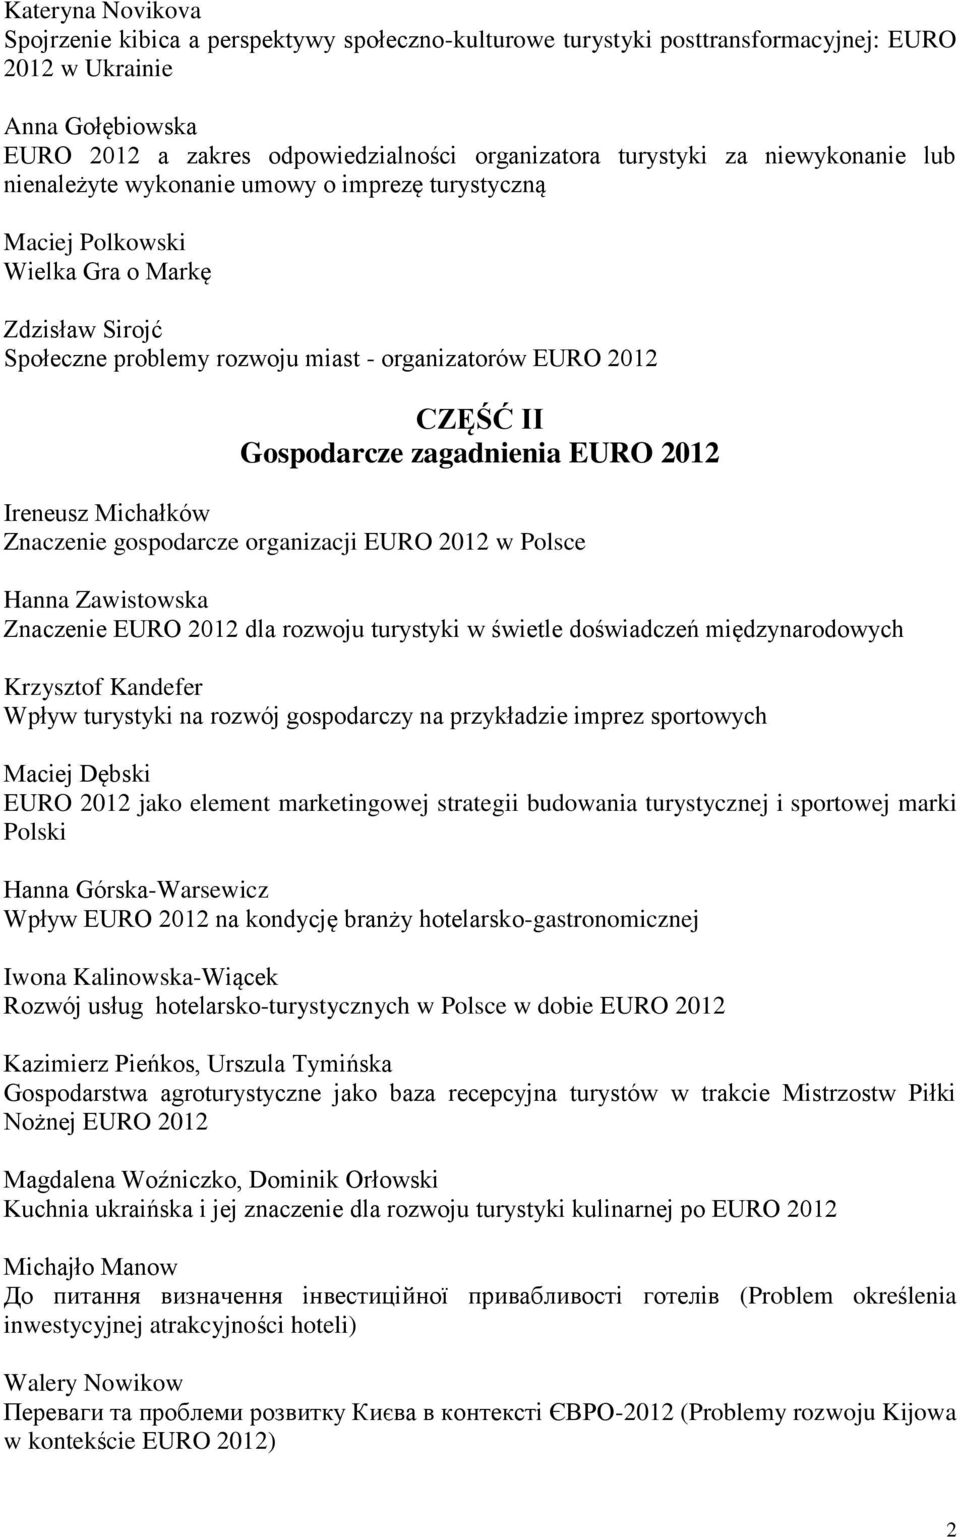 Gospodarcze zagadnienia EURO 2012 Znaczenie gospodarcze organizacji EURO 2012 w Polsce Hanna Zawistowska Znaczenie EURO 2012 dla rozwoju turystyki w świetle doświadczeń międzynarodowych Krzysztof